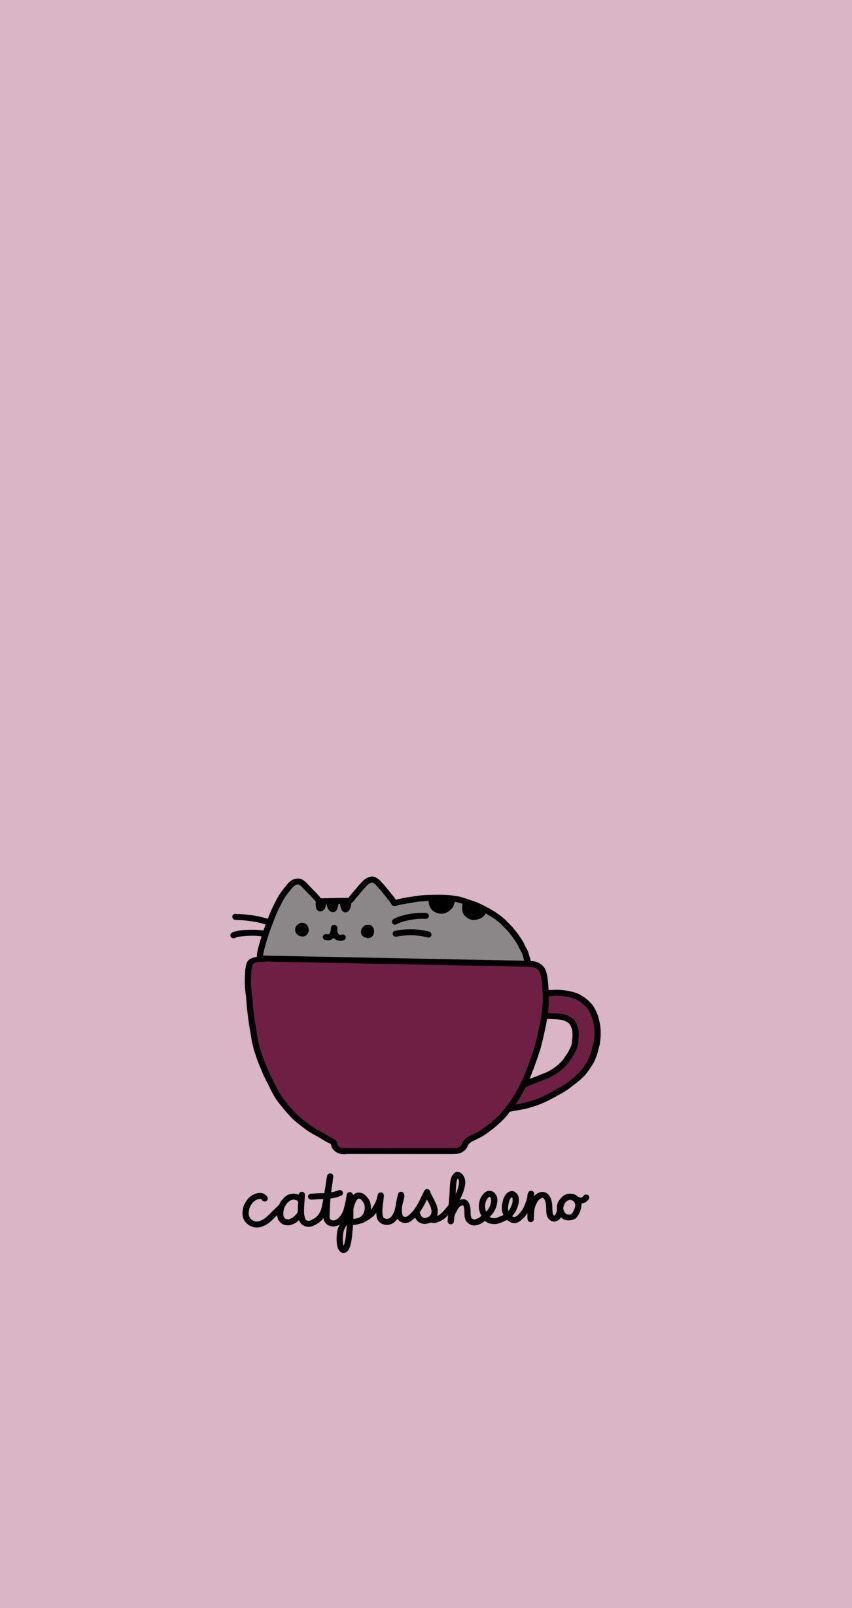 Catpusheeno, pusheen, coffee, cappuccino, wallpaper, phone wallpaper, iphone, Ip. Trend. iPhone wallpaper cat, Pusheen cute, Pusheen